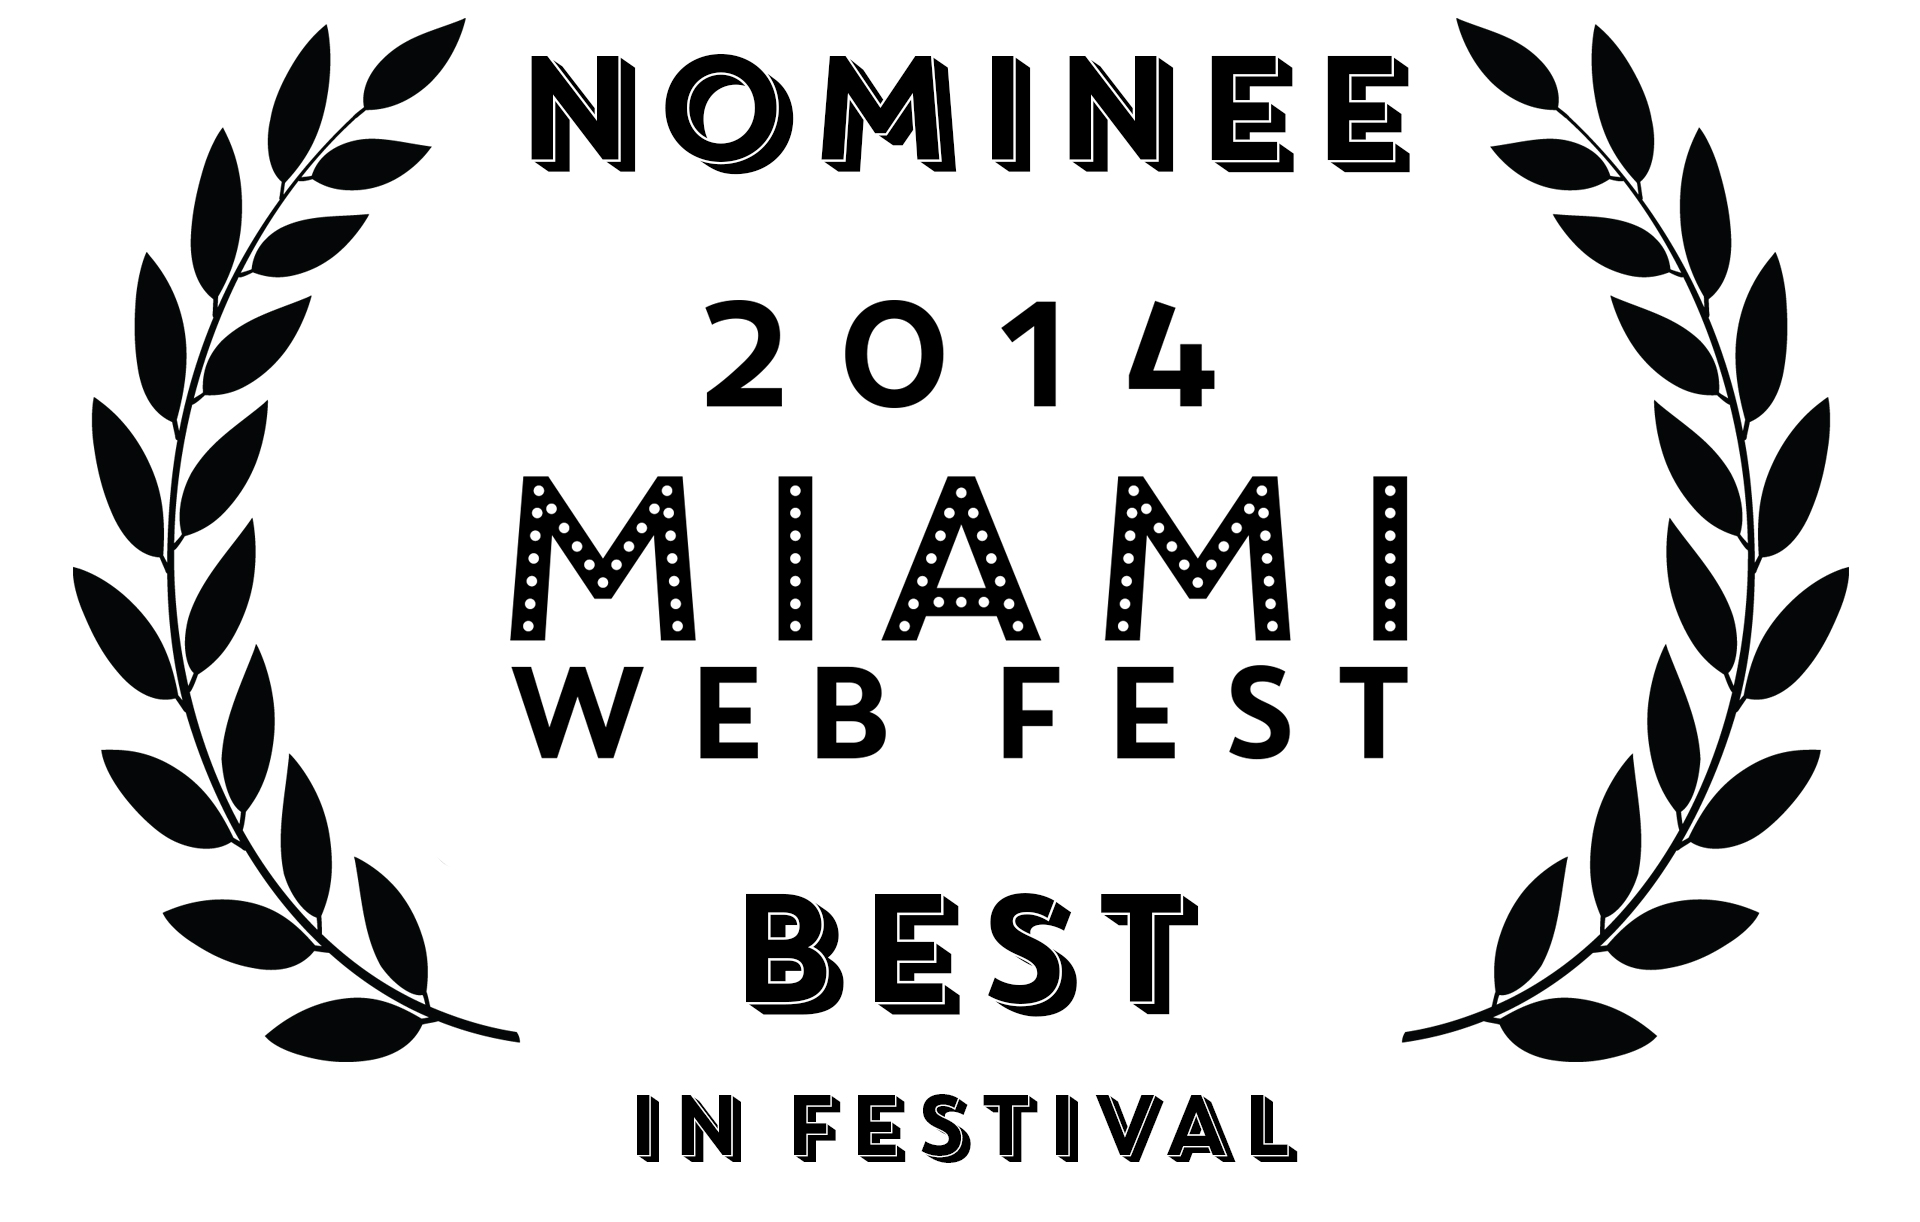 Miami Web Fest